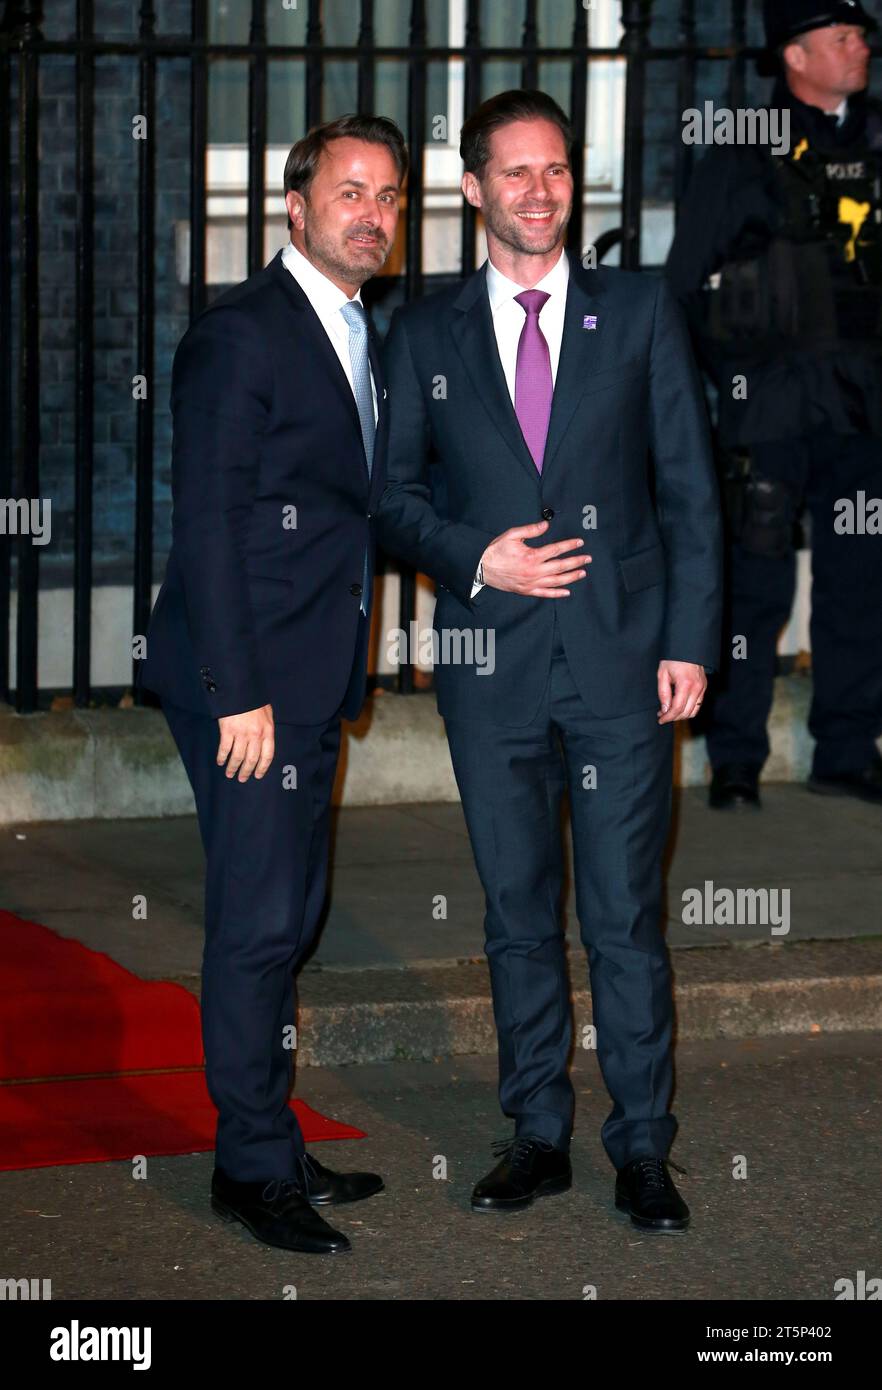 Il primo ministro lussemburghese Xavier Bettel e suo marito Gauthier Destenay arrivano per partecipare a un ricevimento per celebrare il 70 ° anniversario della formazione della North Atlantic Treaty Organisation (NATO) al numero 10 di Downing Street a Londra. Foto Stock